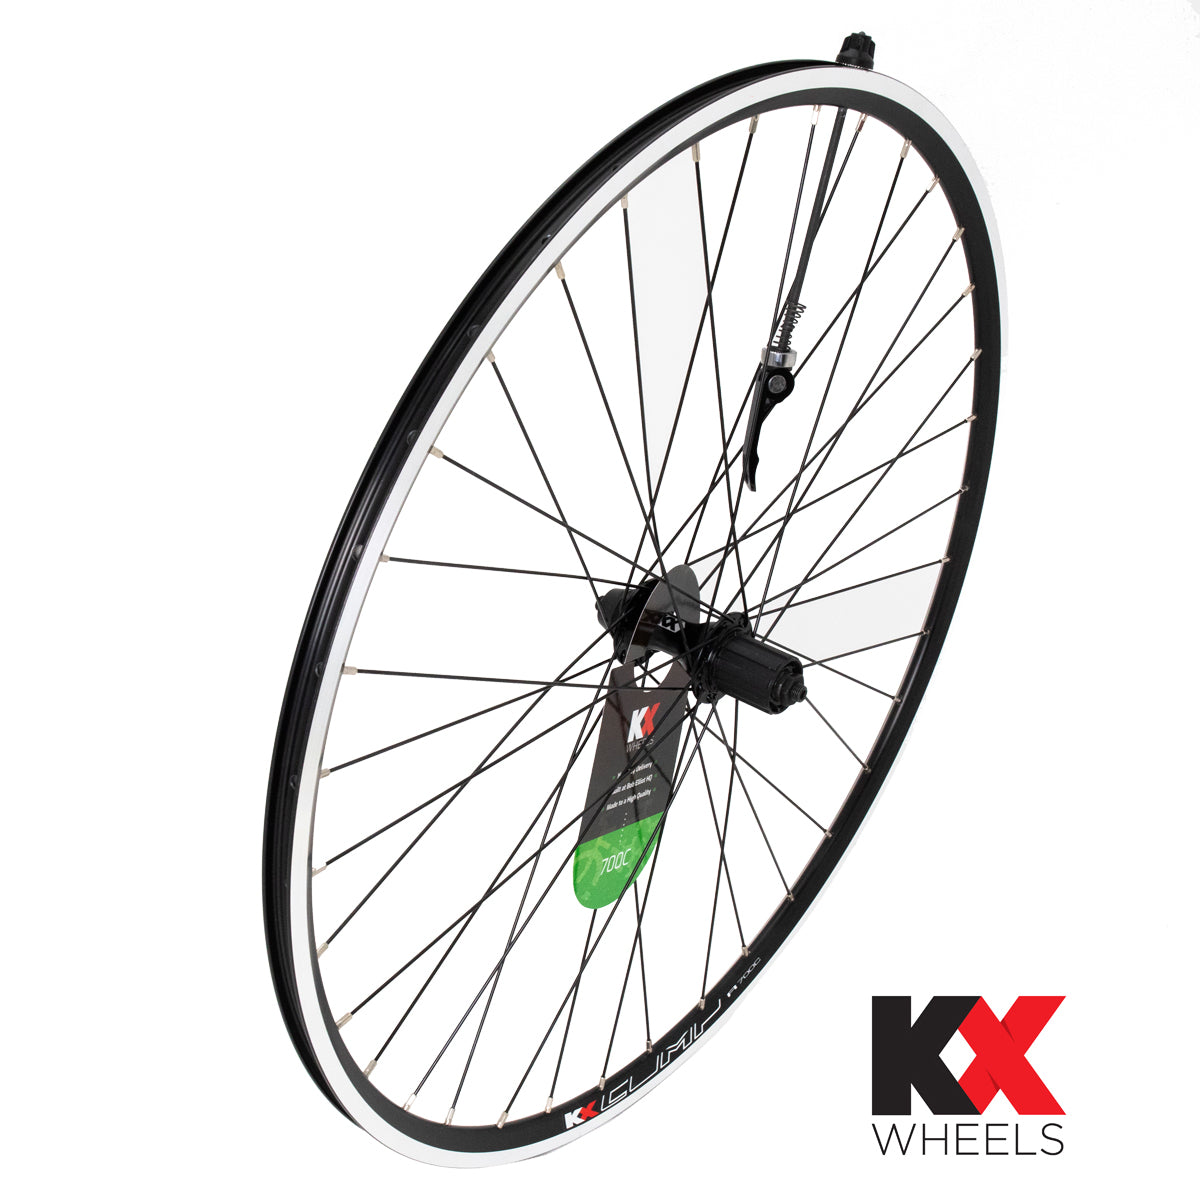 KX Wheels Double Wall QR Cassette 700c Rear Bike Wheel Black